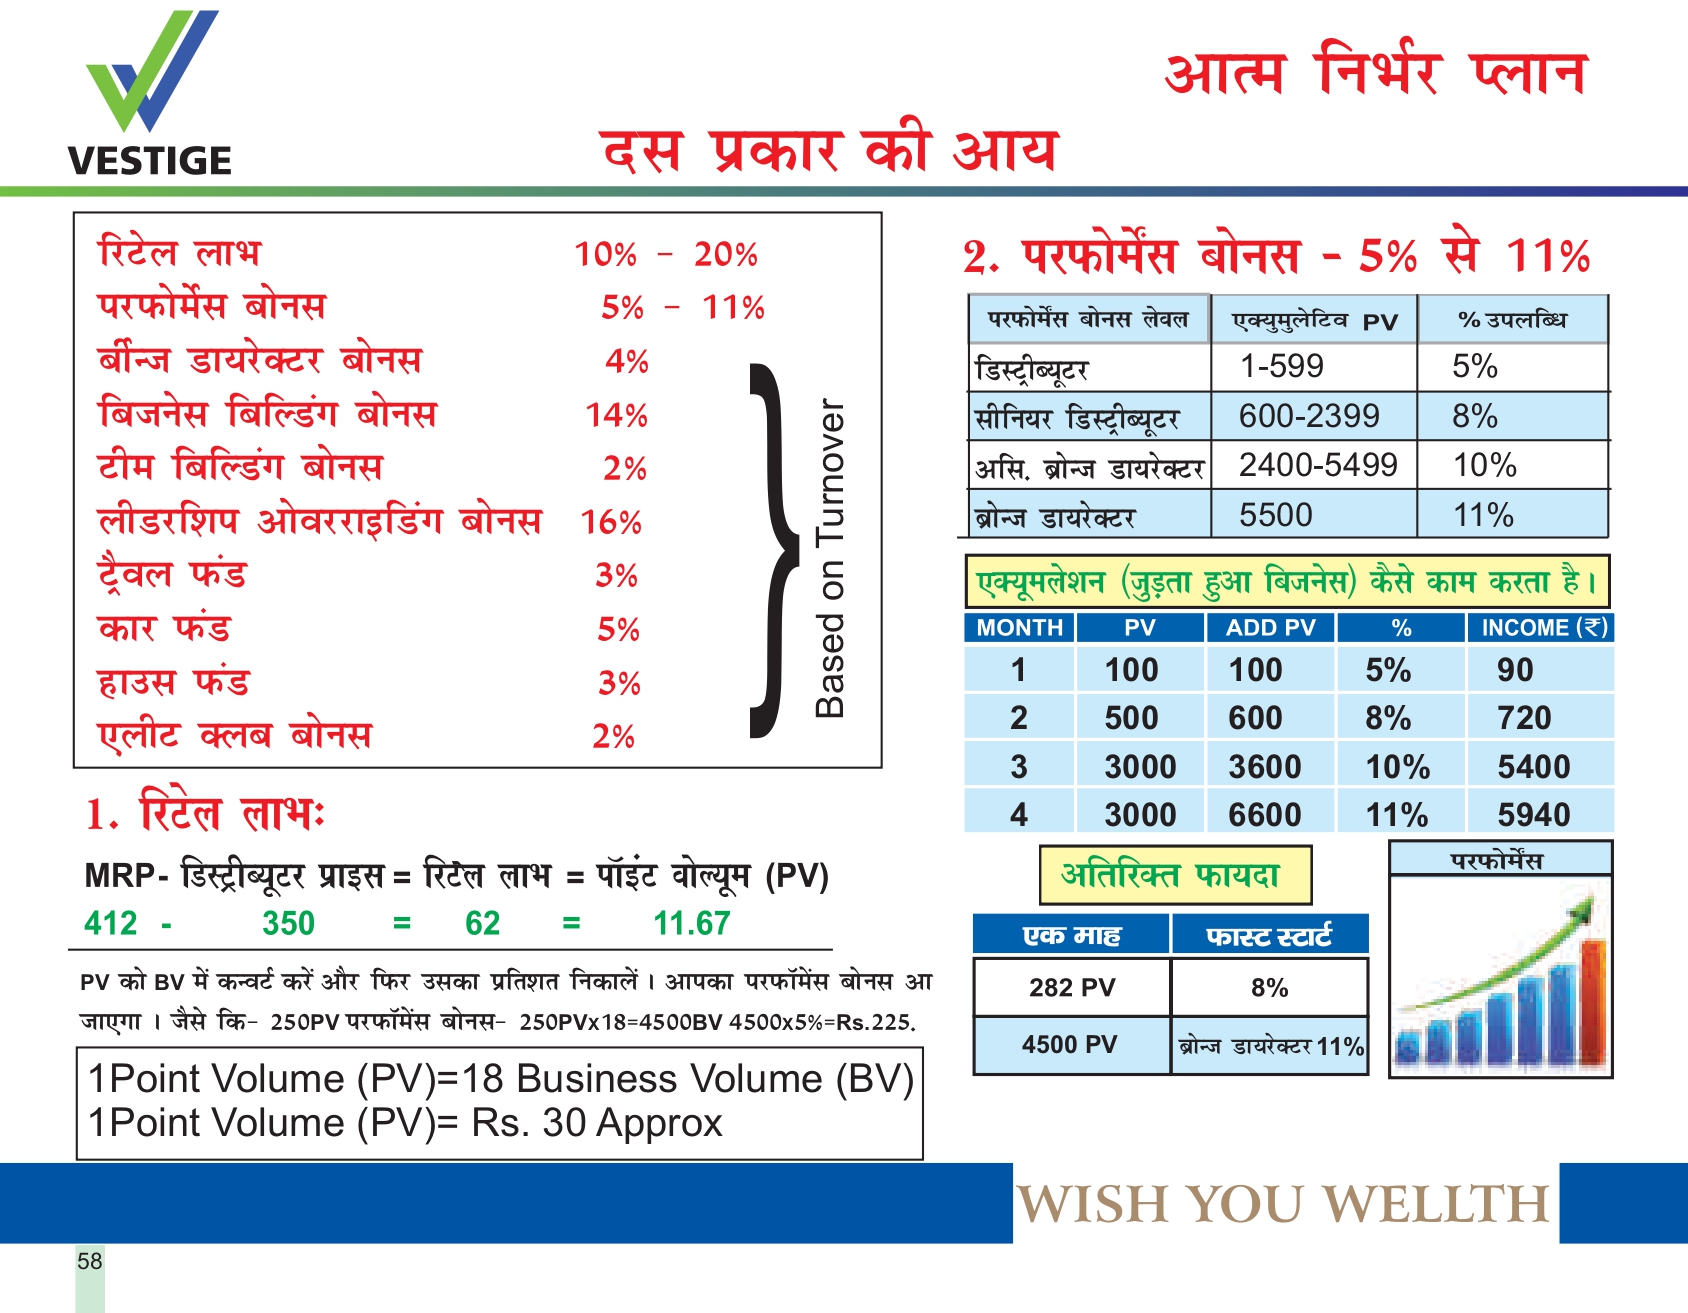 vestige business plan pdf in hindi